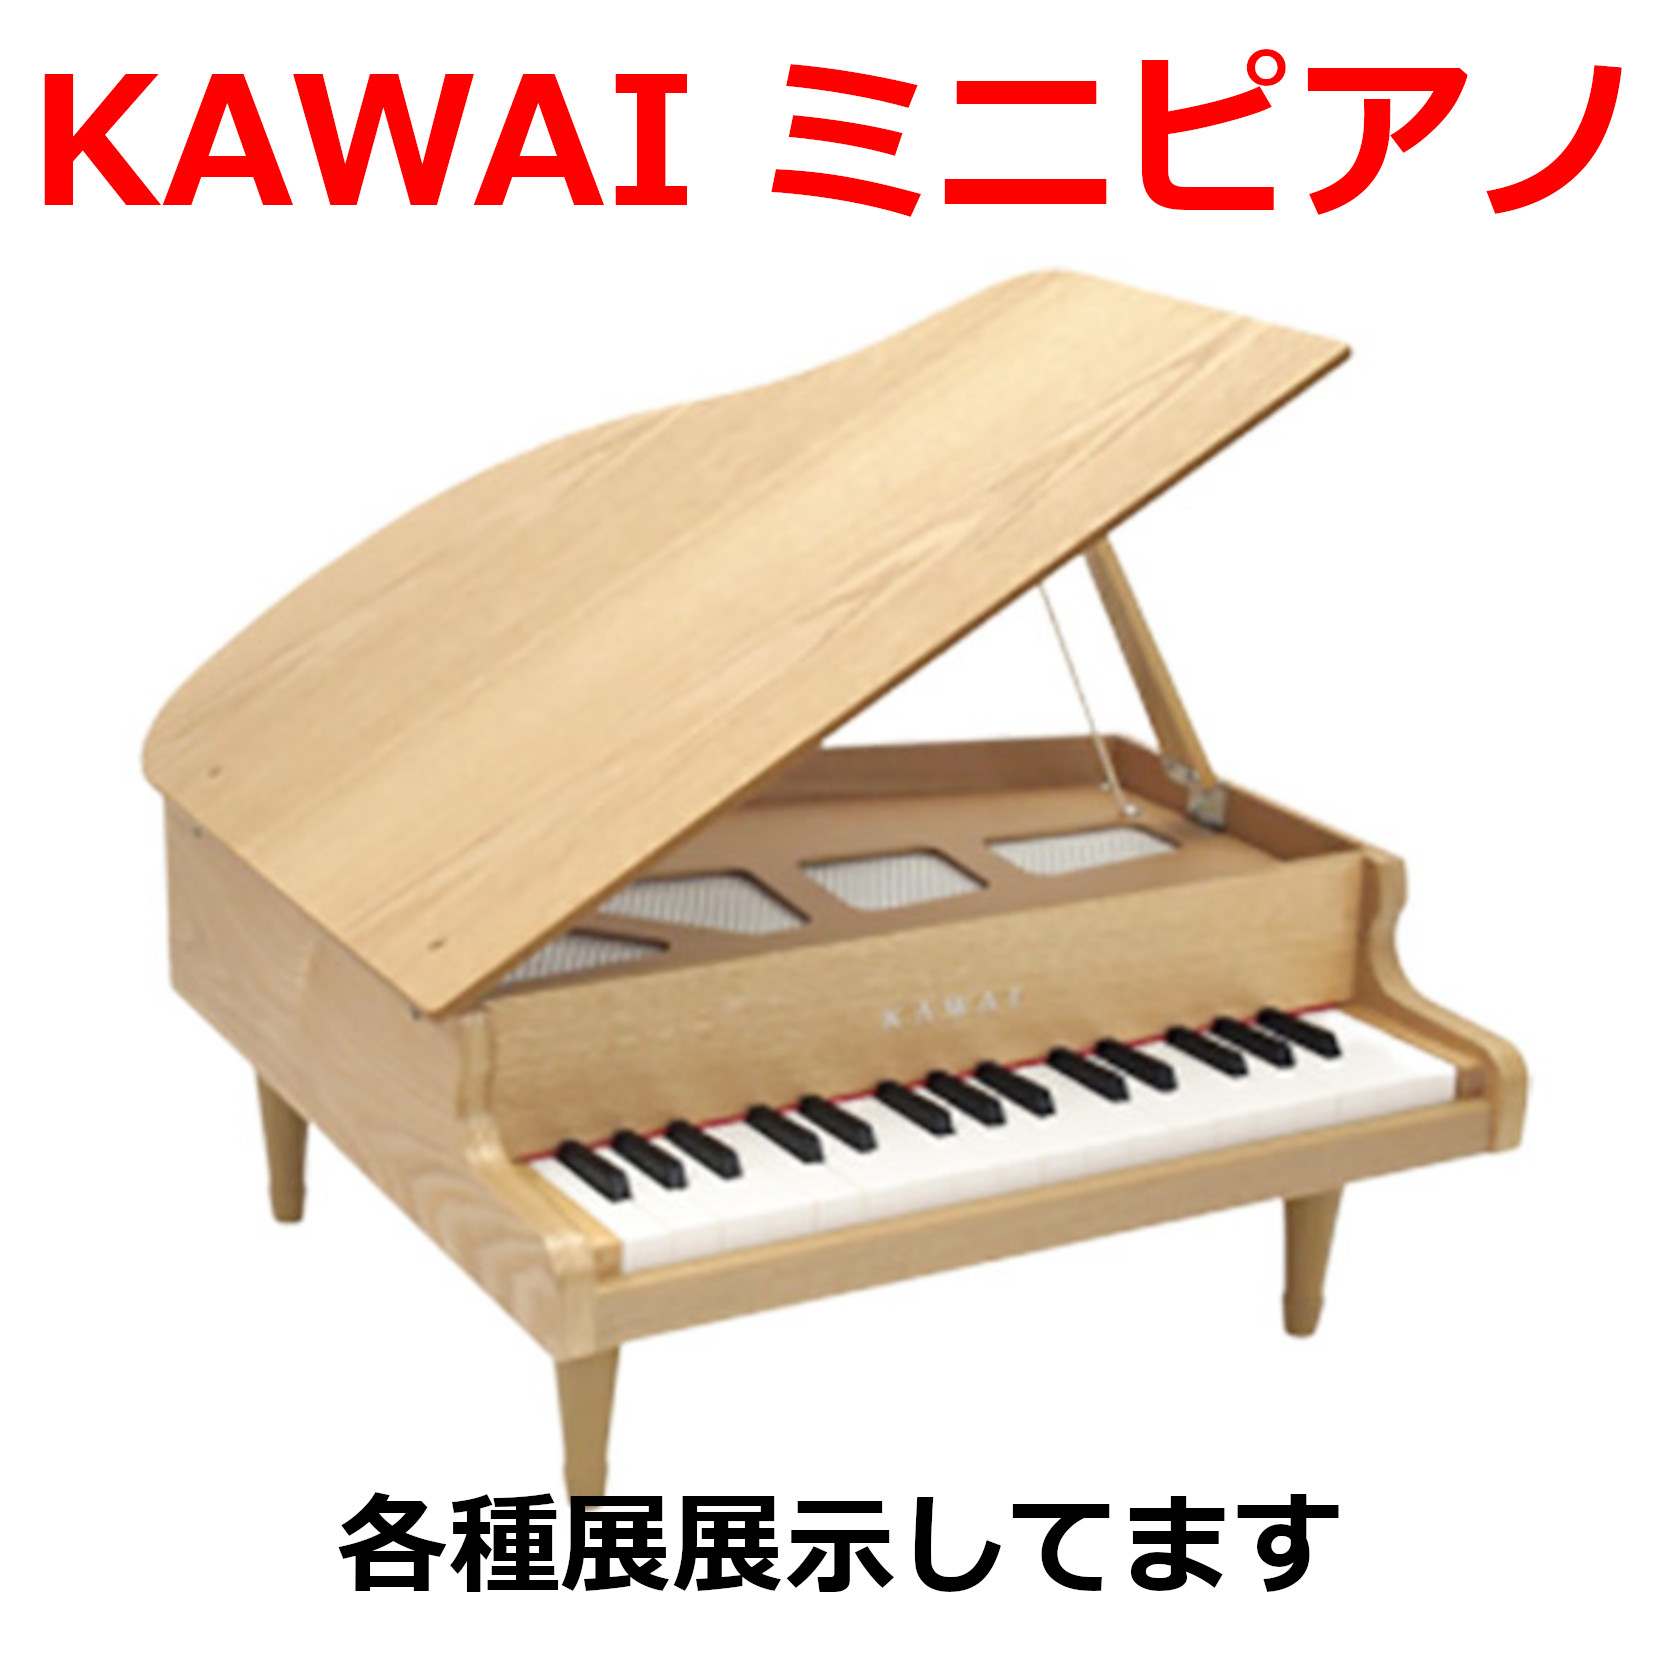 ミニサイズながら正確な音程とかわいらしいルックスで人気のKAWAIのミニピアノを各種展示しています！お子様へのプレゼントや知人へのギフトご自身の趣味の一つとして・・・様々なシーンで人気のミニピアノです。 CONTENTS展示モデル展示モデル